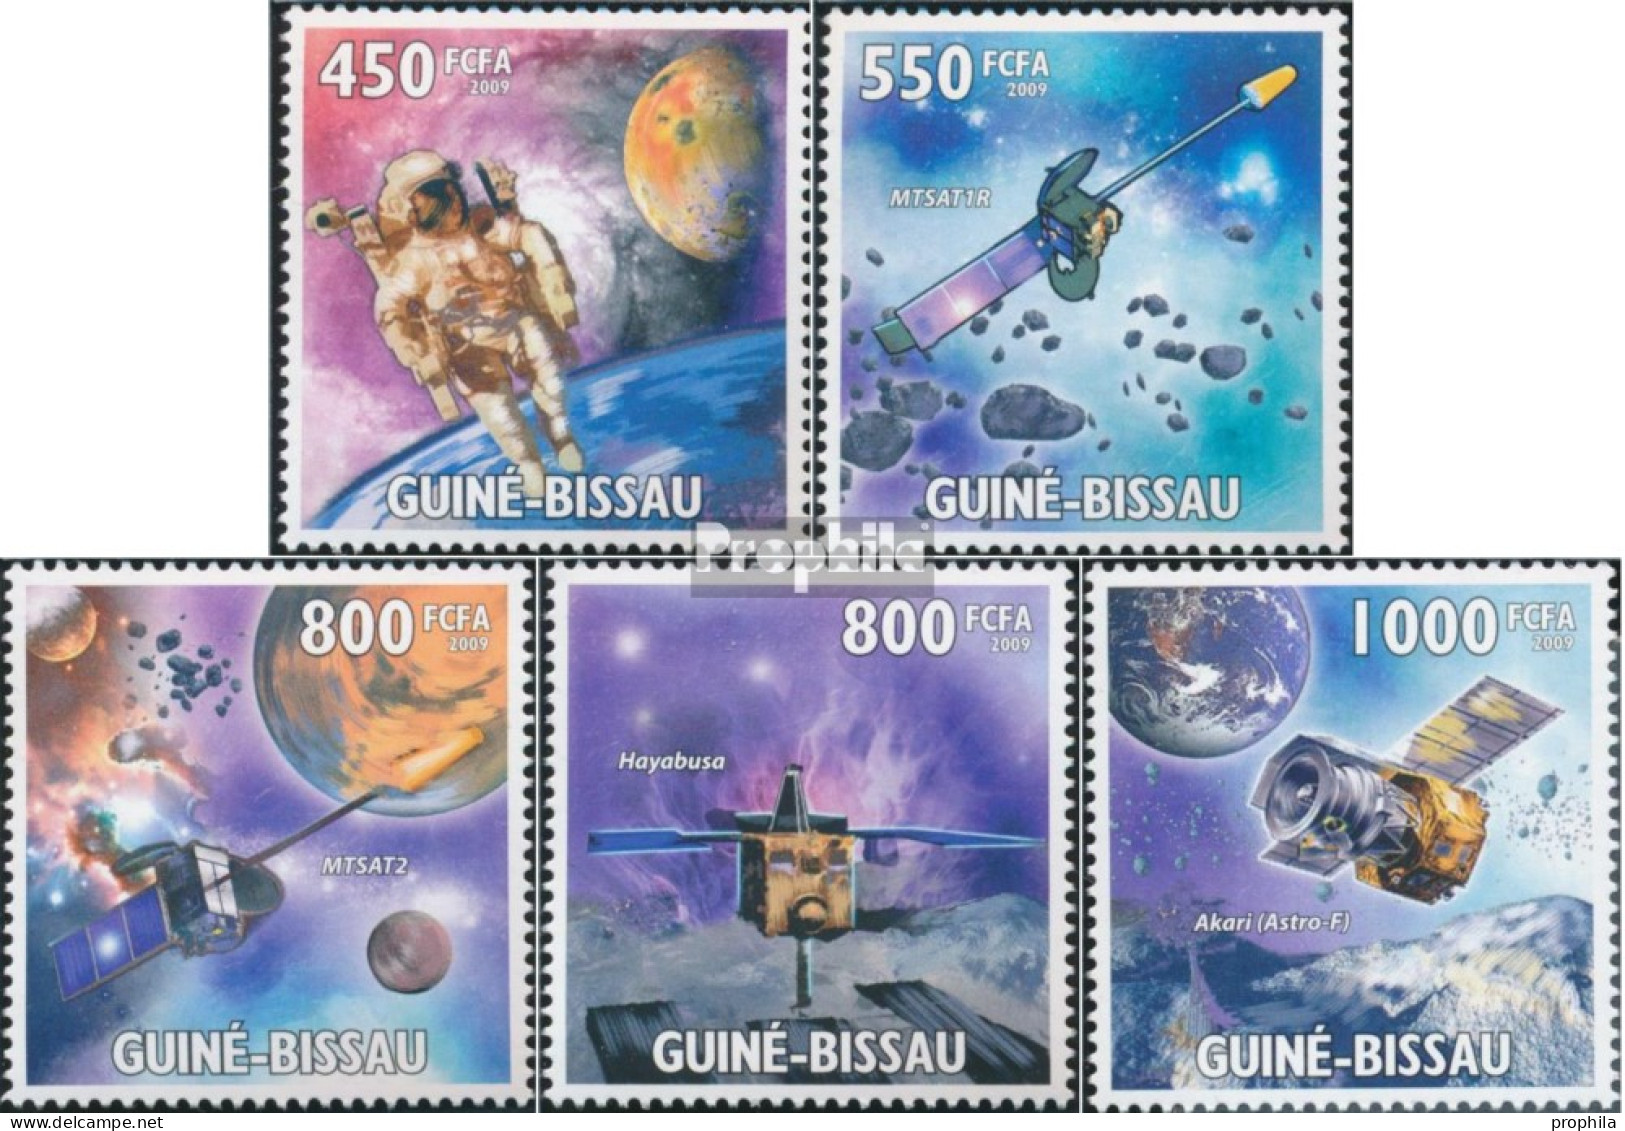 Guinea-Bissau 4492-4496 (kompl. Ausgabe) Postfrisch 2009 JAXA Japanische Raumfahrtagentur - Guinea-Bissau